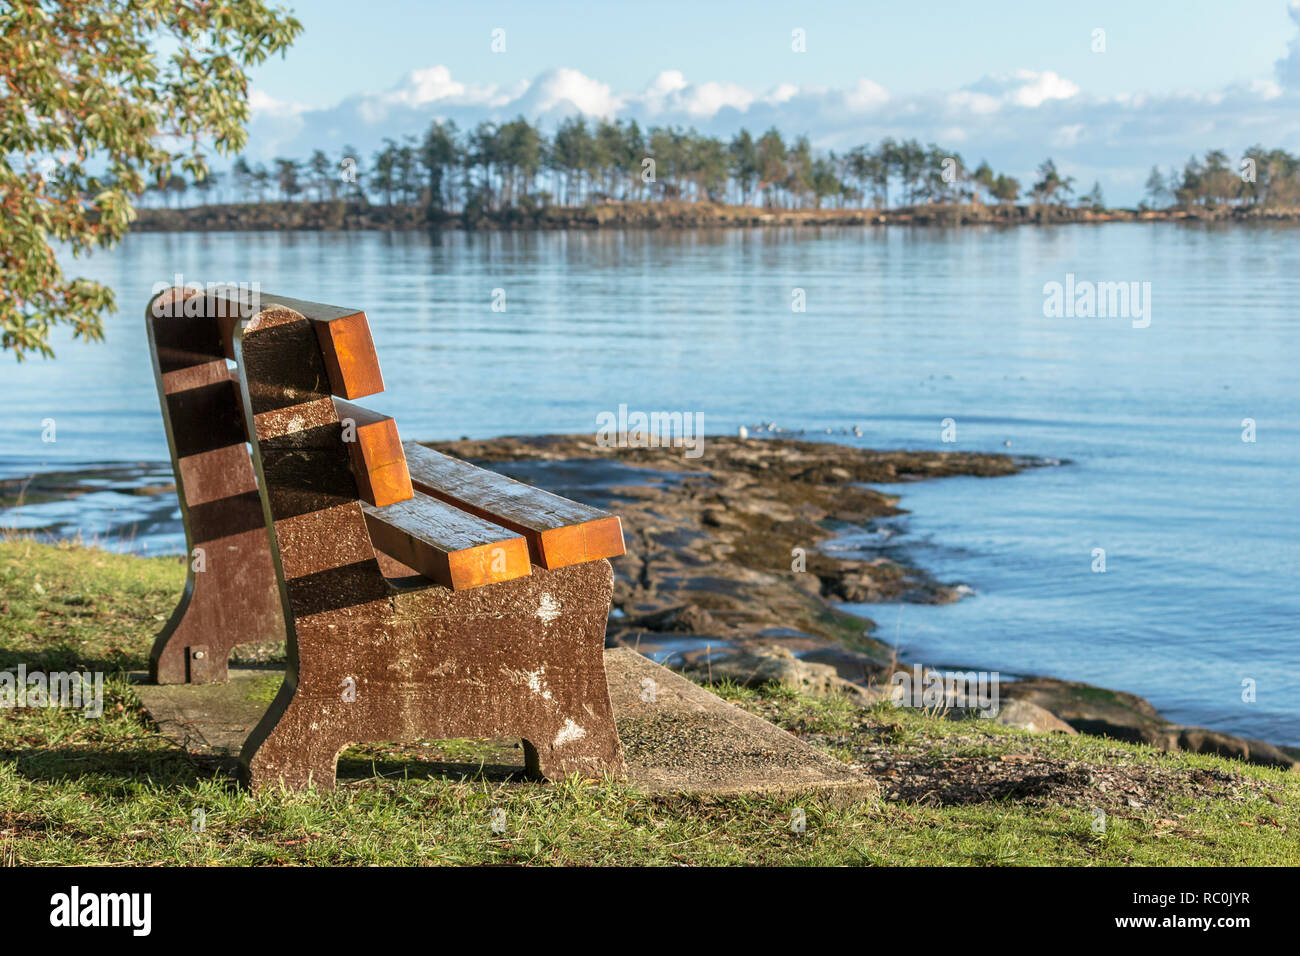 Ein verwittertes Holz und Beton Bank neben einem felsigen Strand bietet einen Blick auf ruhigem Wasser und einer nahe gelegenen Insel an einem sonnigen Wintertag (British Columbia). Stockfoto